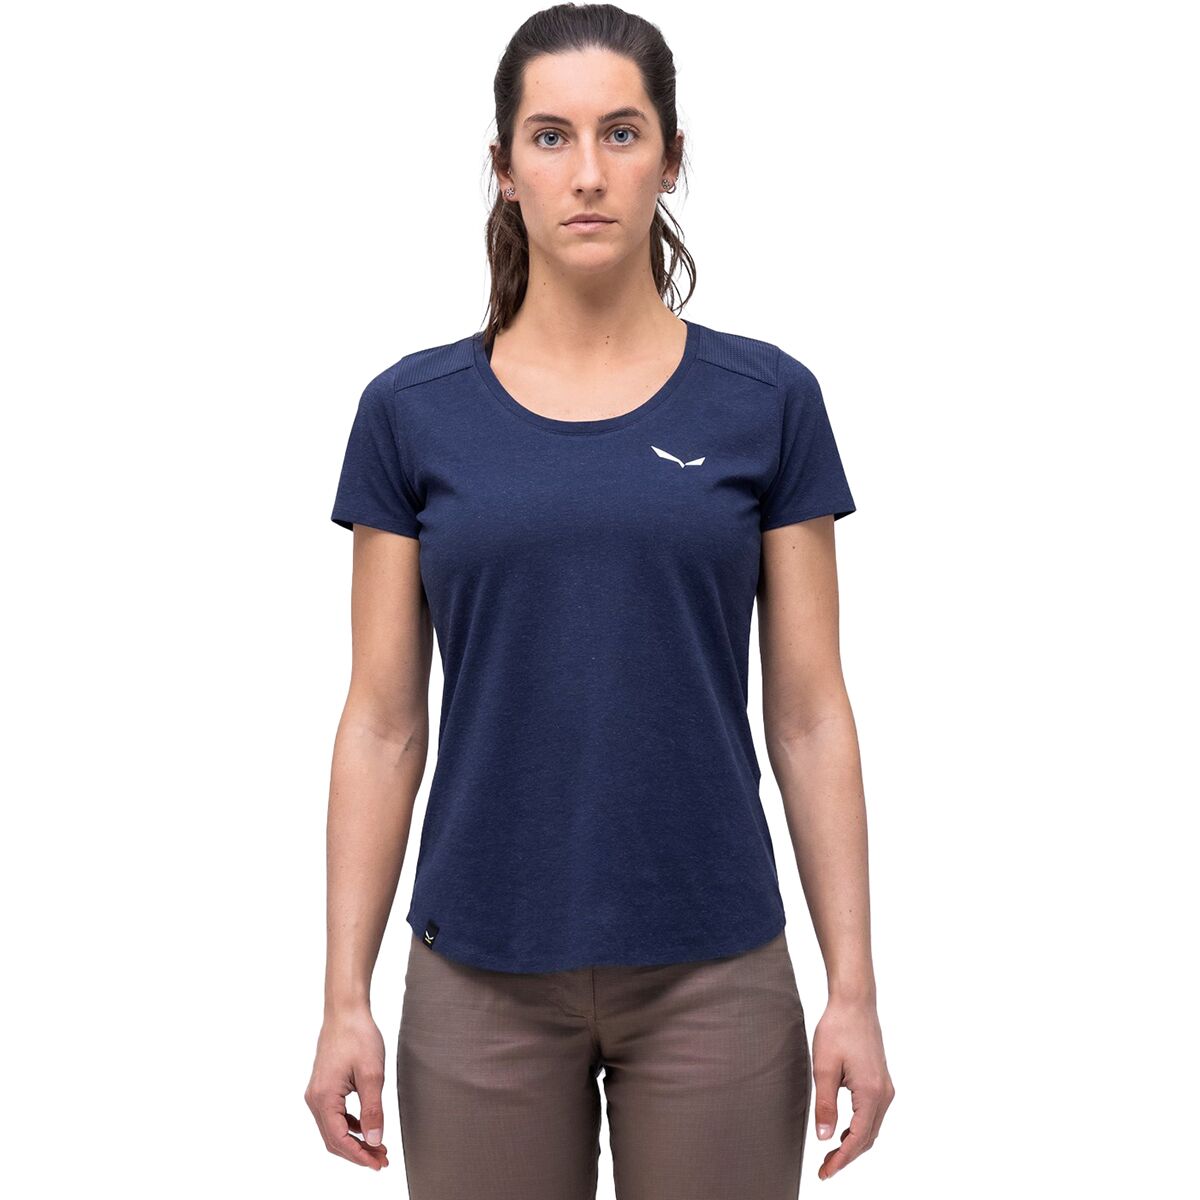 Alpine Hemp Graphic T-Shirt - Women